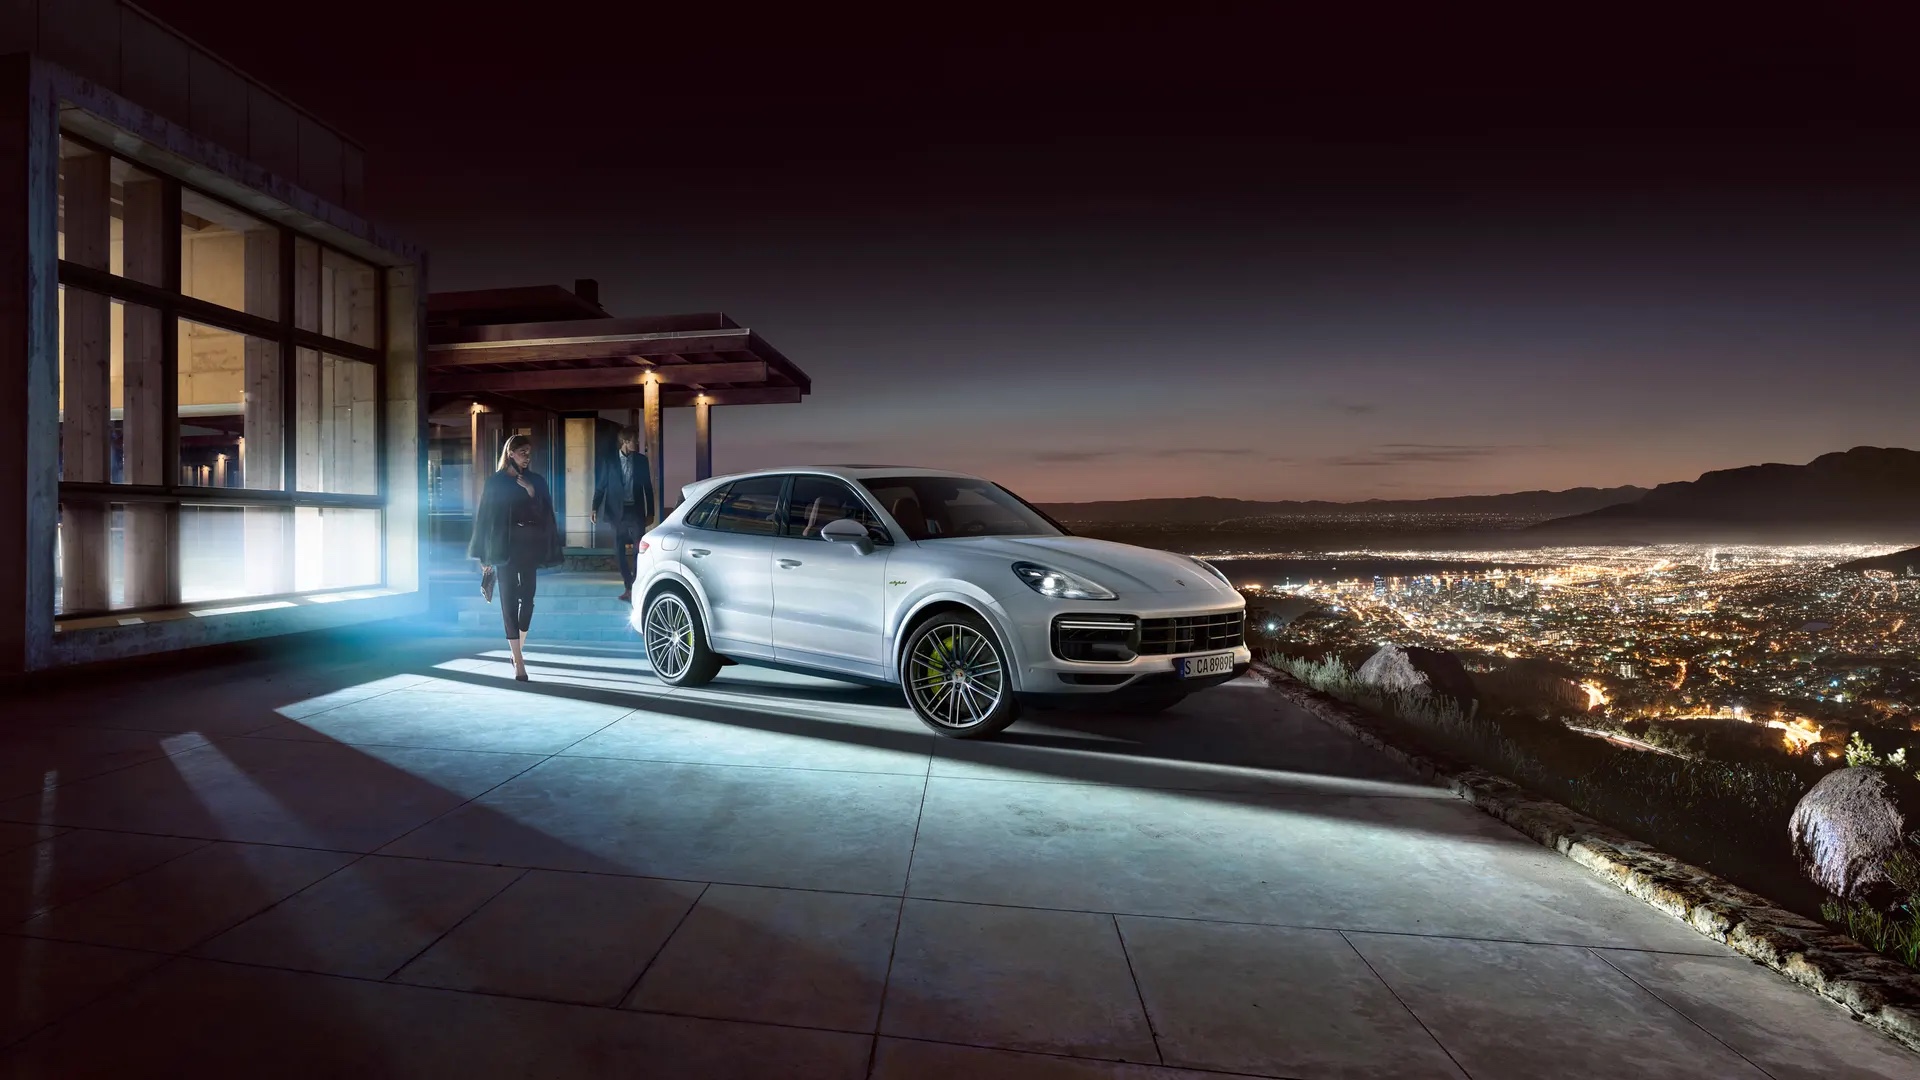 Porsche Cayenne vuoren päällä taustanaan valaistu kaupunki.